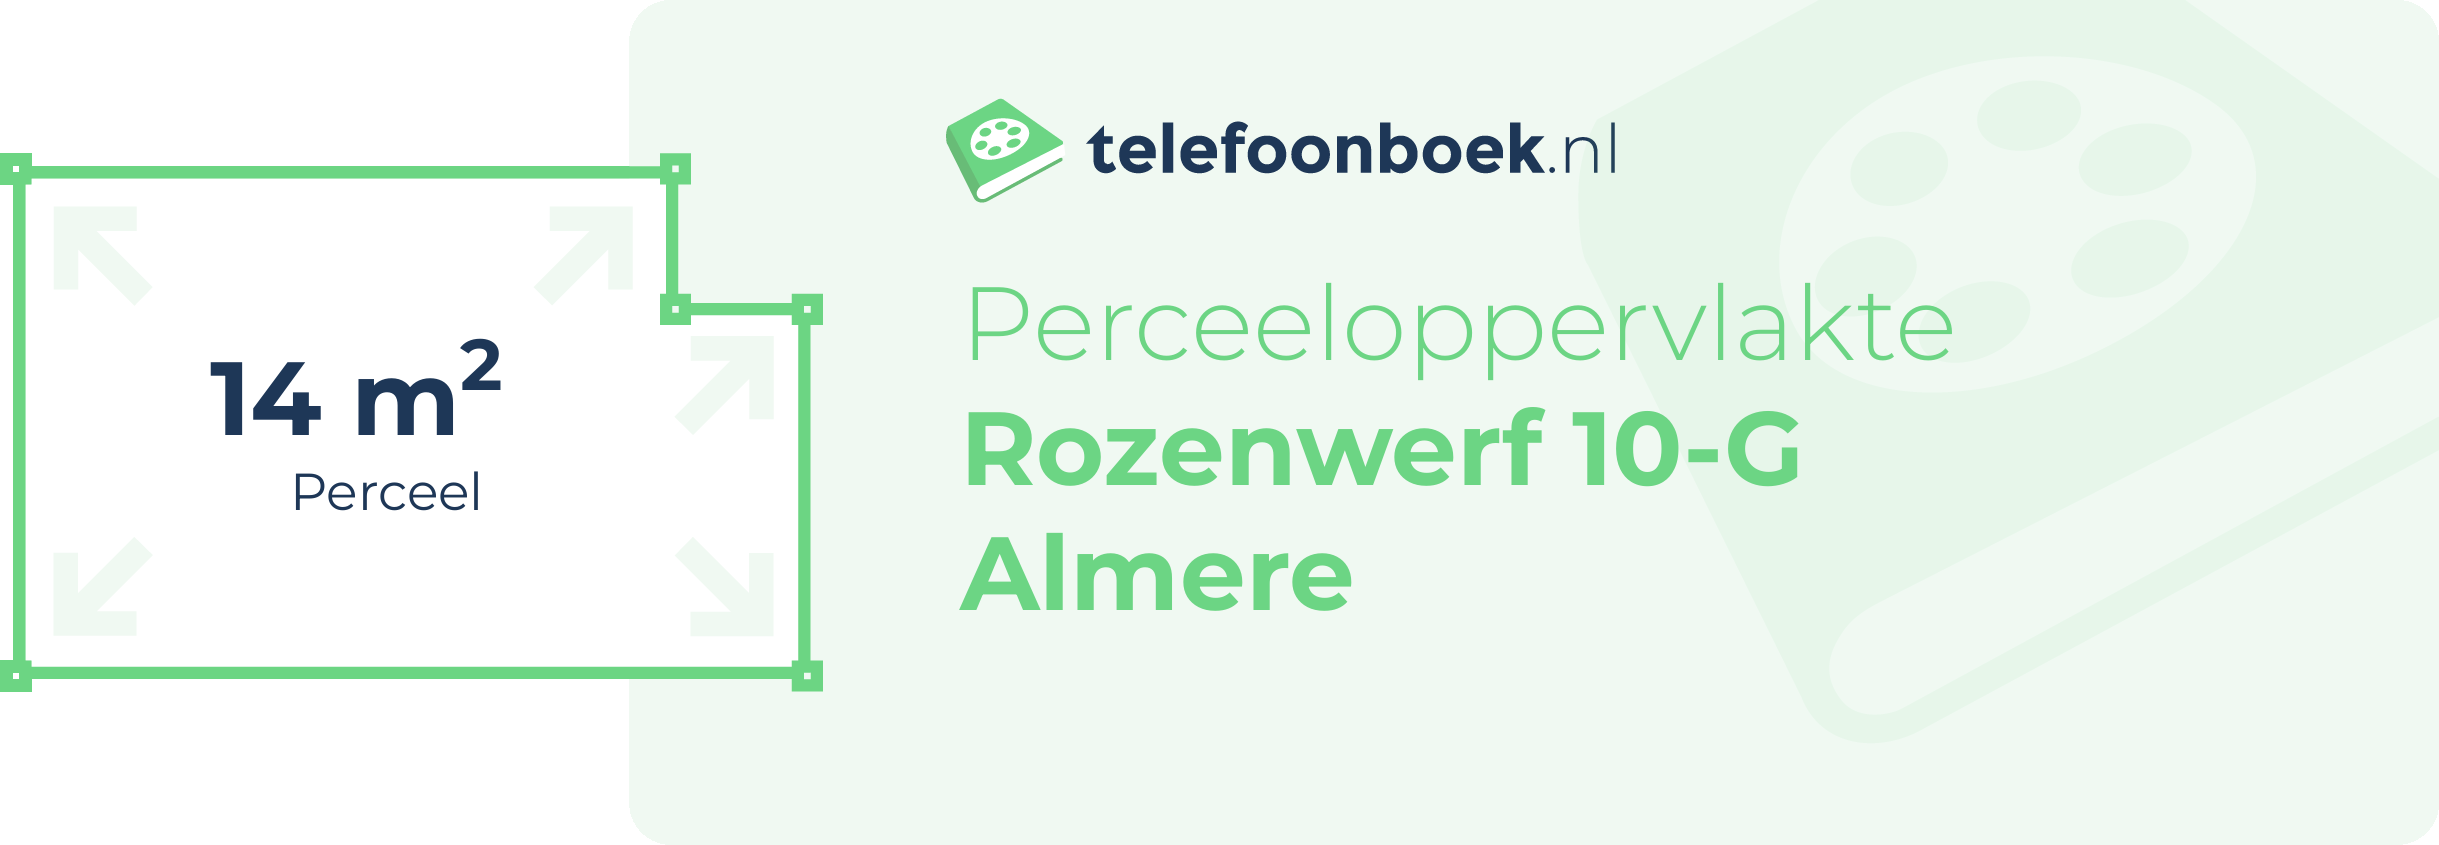 Perceeloppervlakte Rozenwerf 10-G Almere